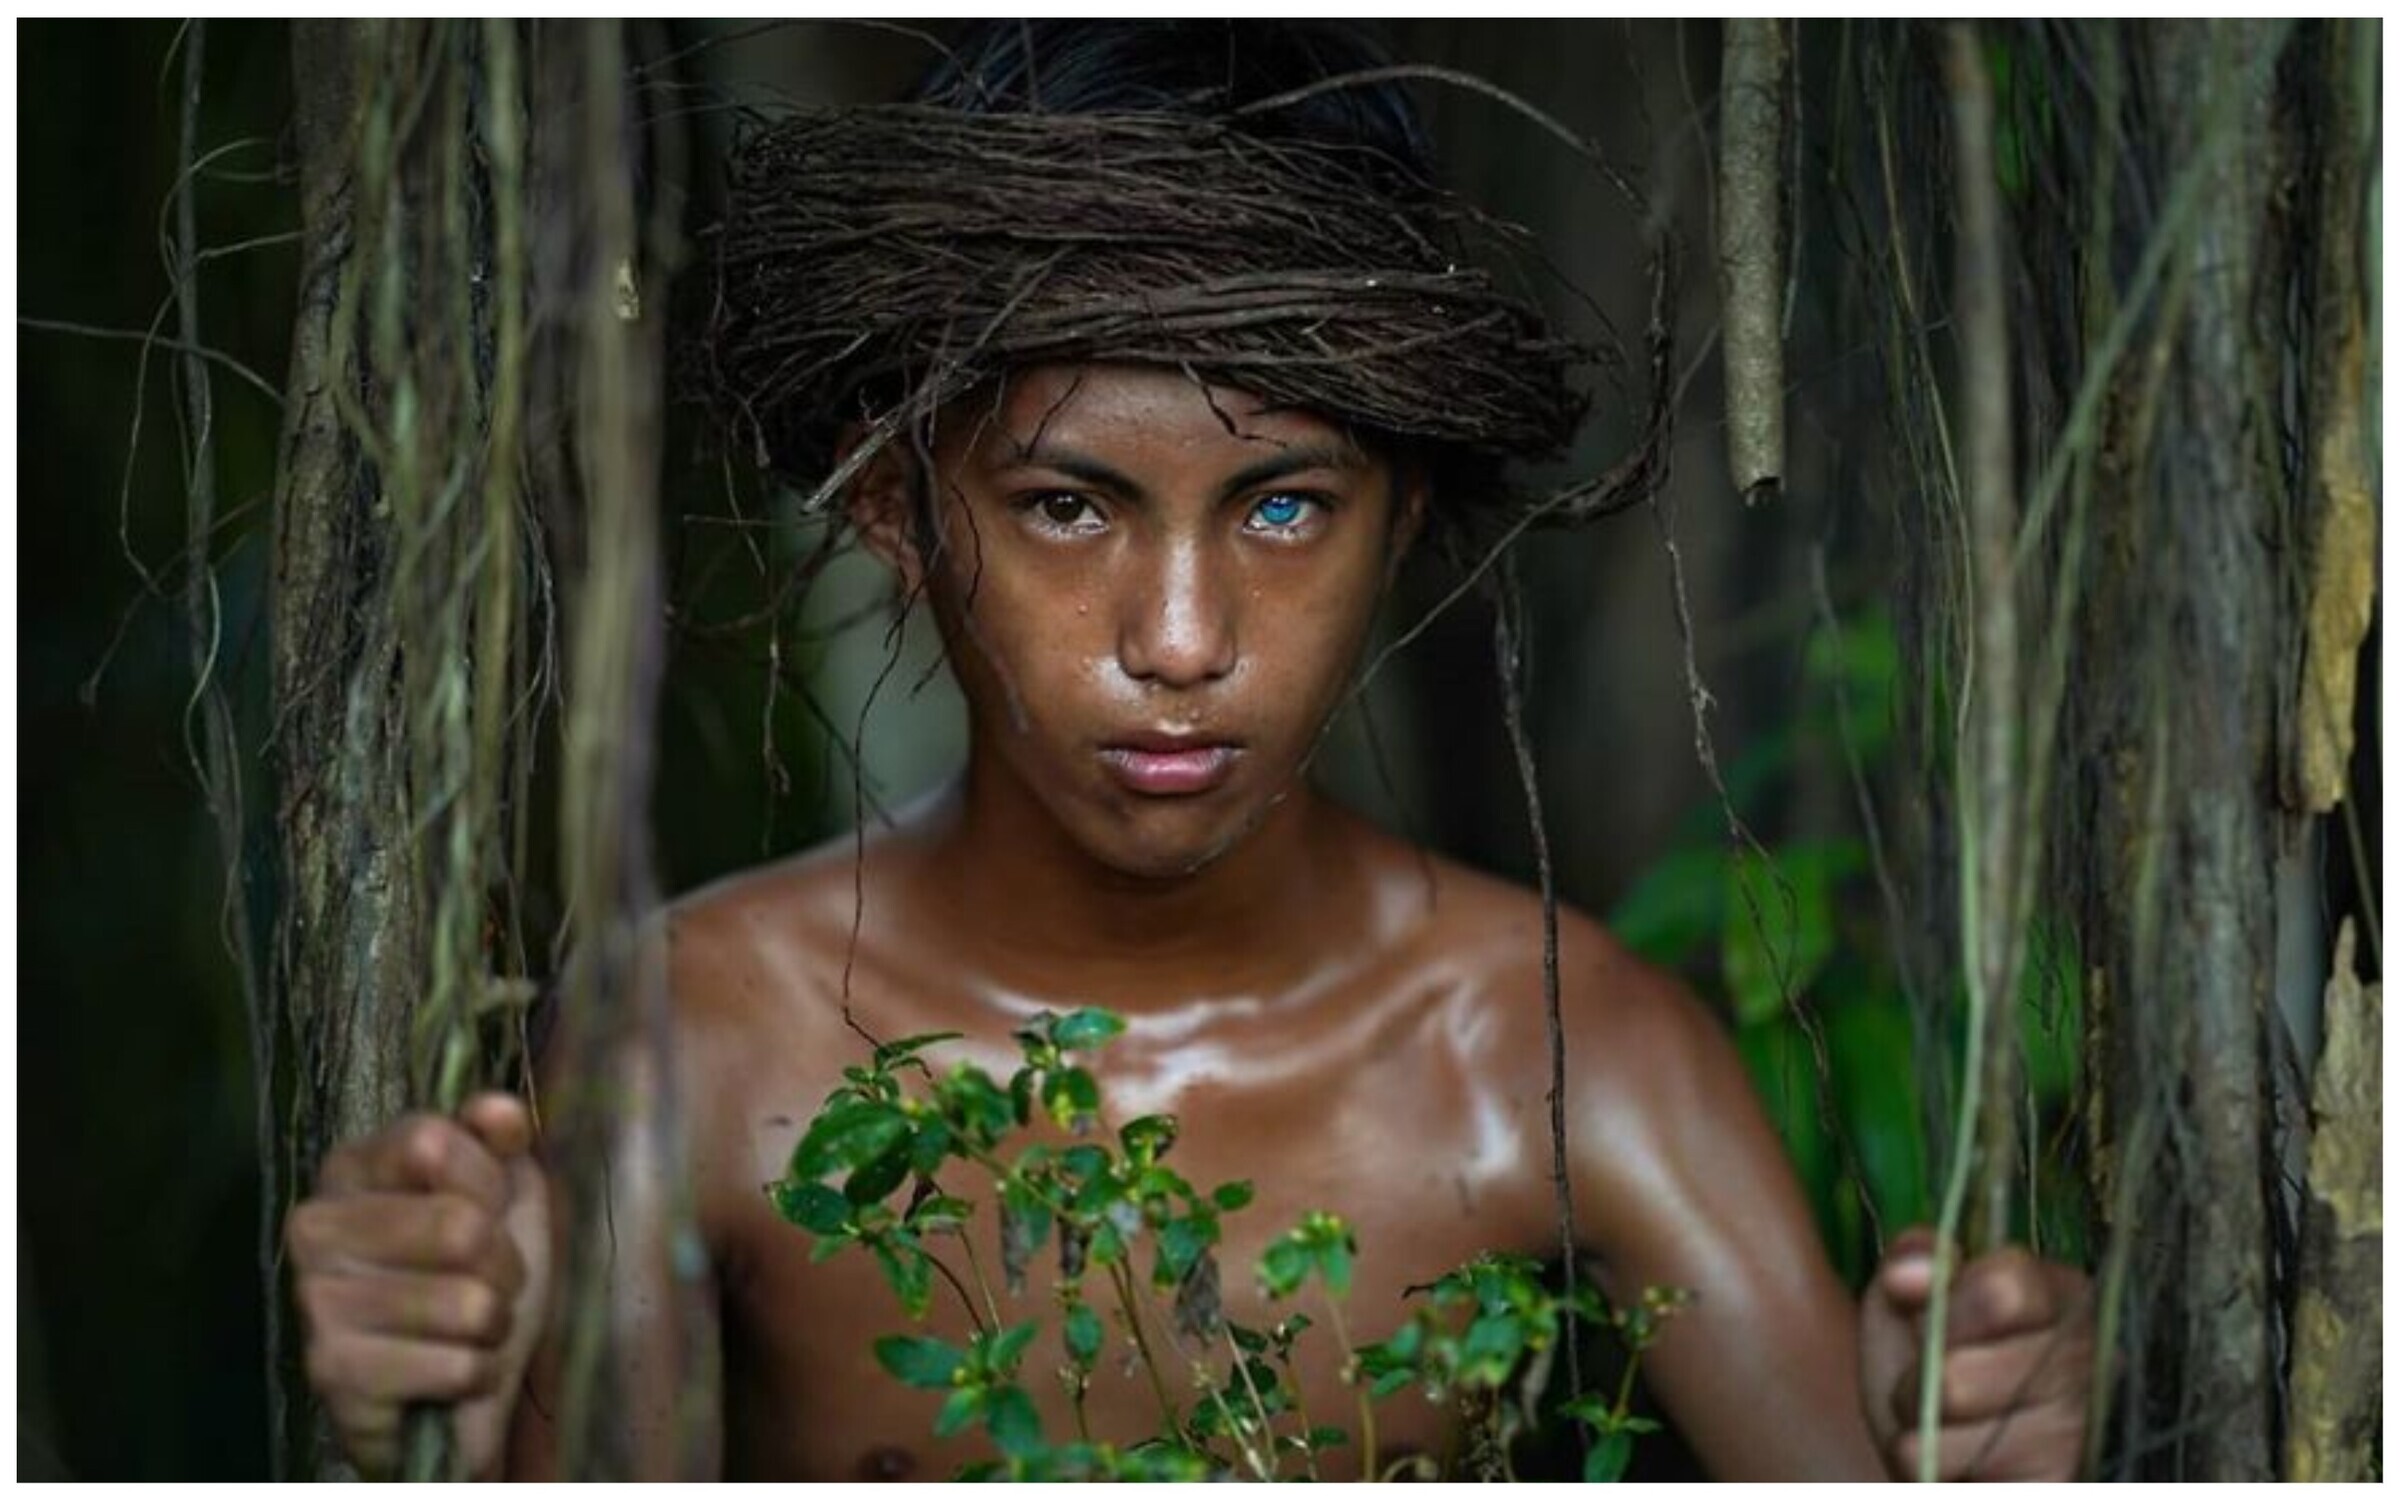 Негритянка в джунглях. Индонезия племя бутунг. Бразилия джунгли неконтактные племена. Племя бутон на острове бутунг Индонезии.